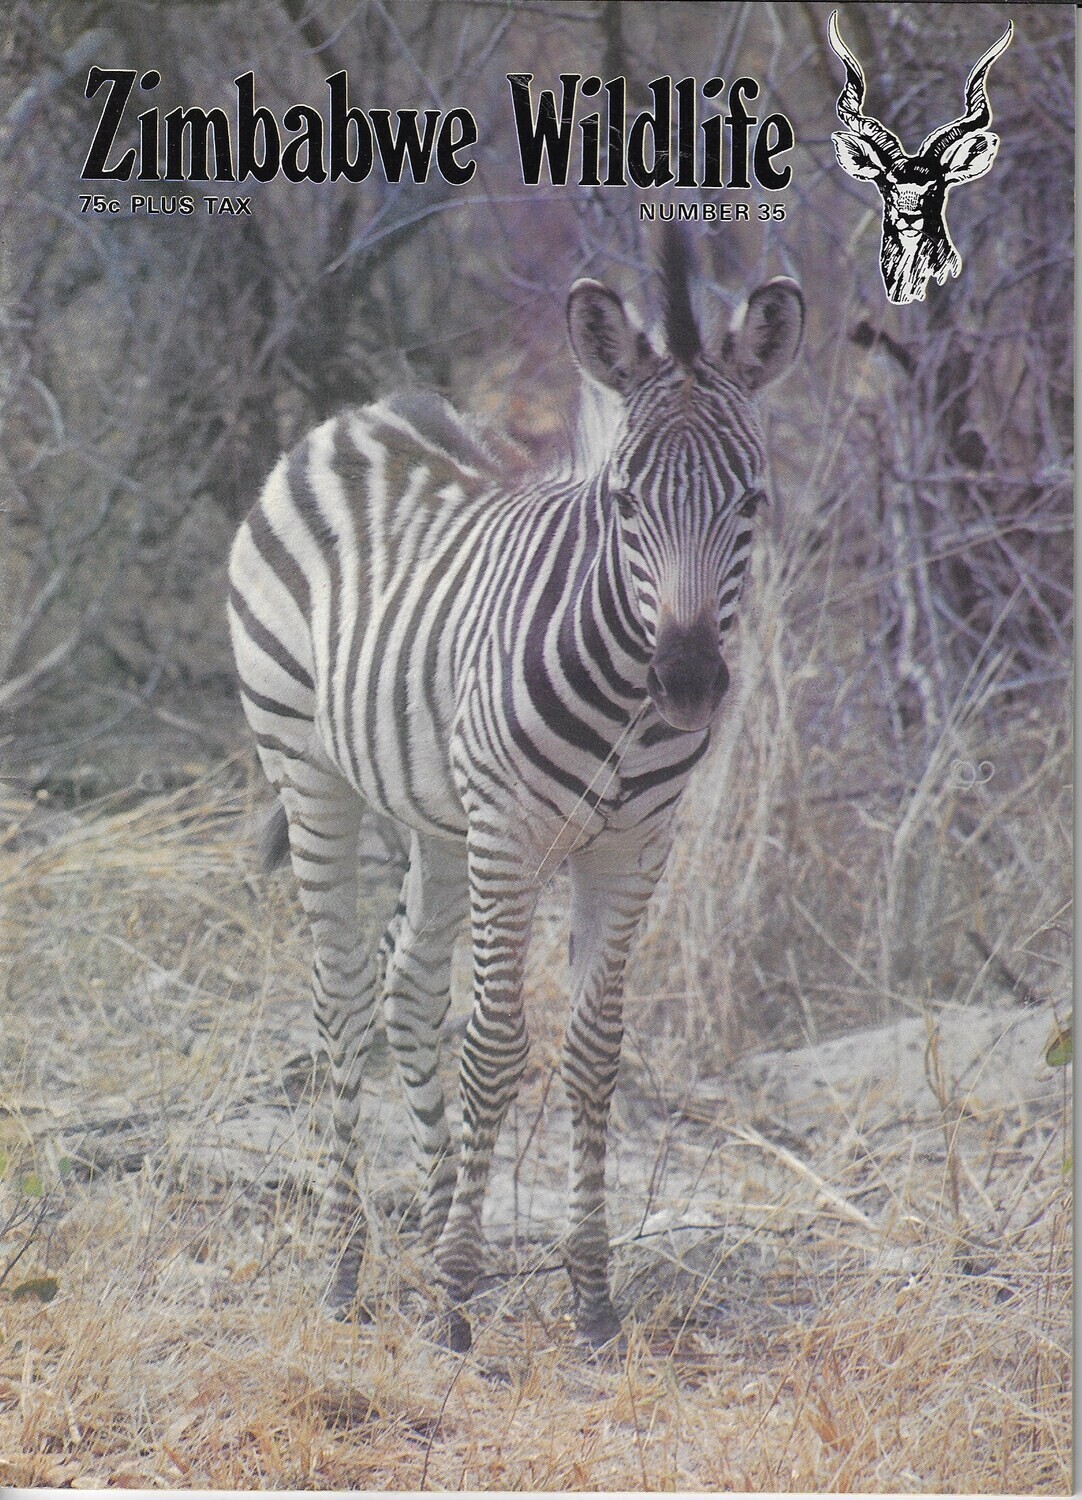 Zimbabwe Wildlife #35